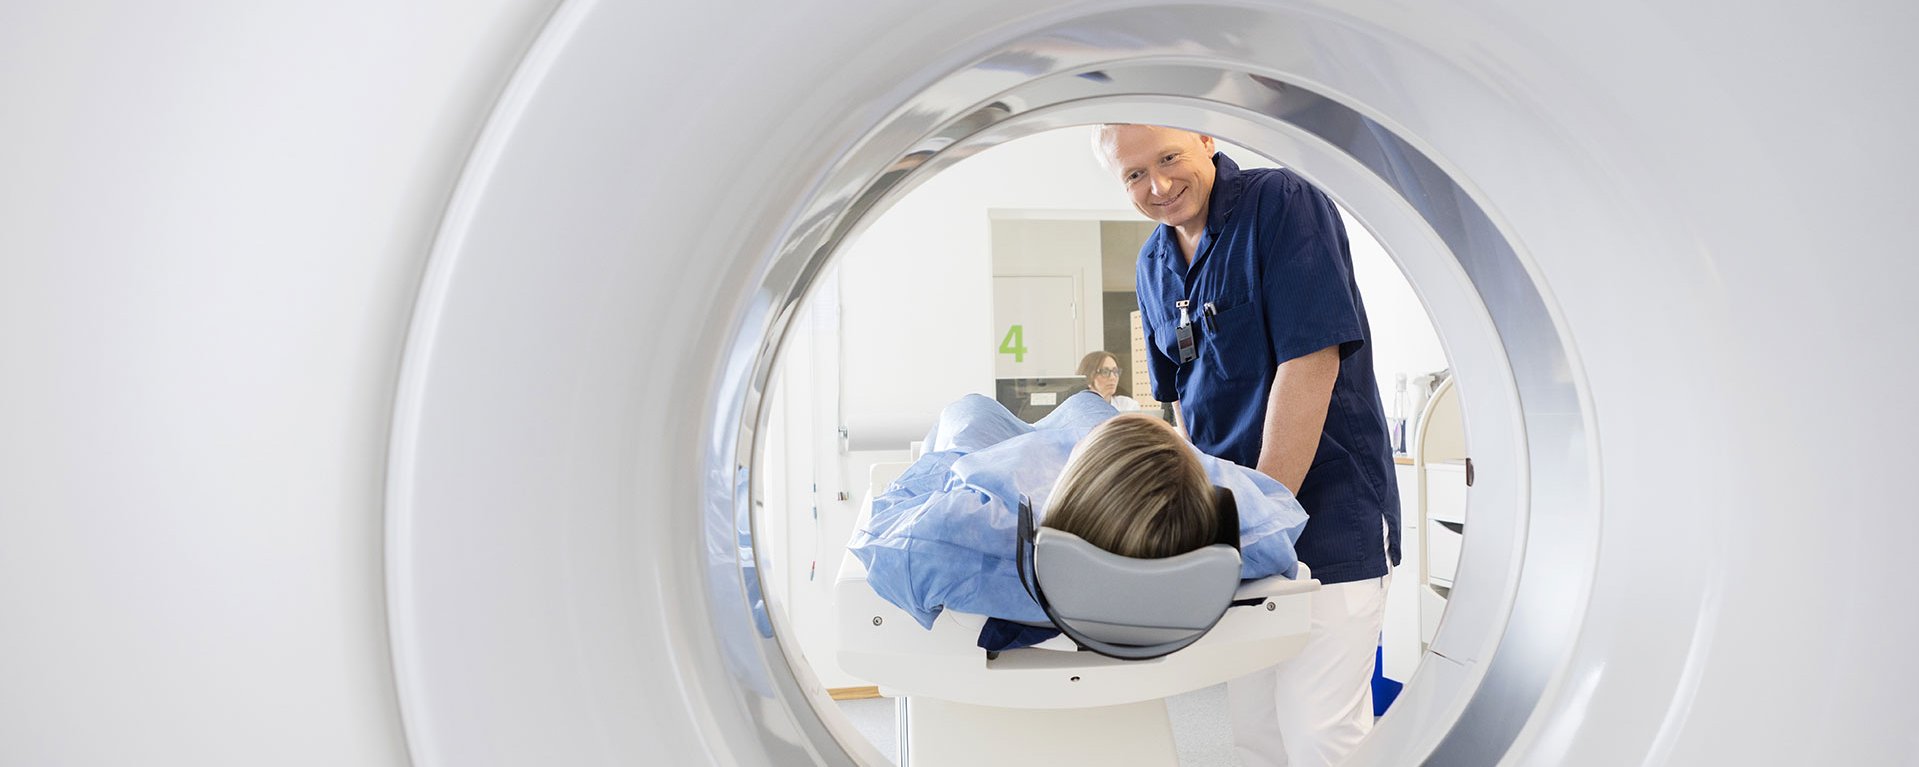 Männlicher Arzt des Klinikverbunds Allgäu betrachtet eine Patientin, die einen CT-Scan durchläuft.